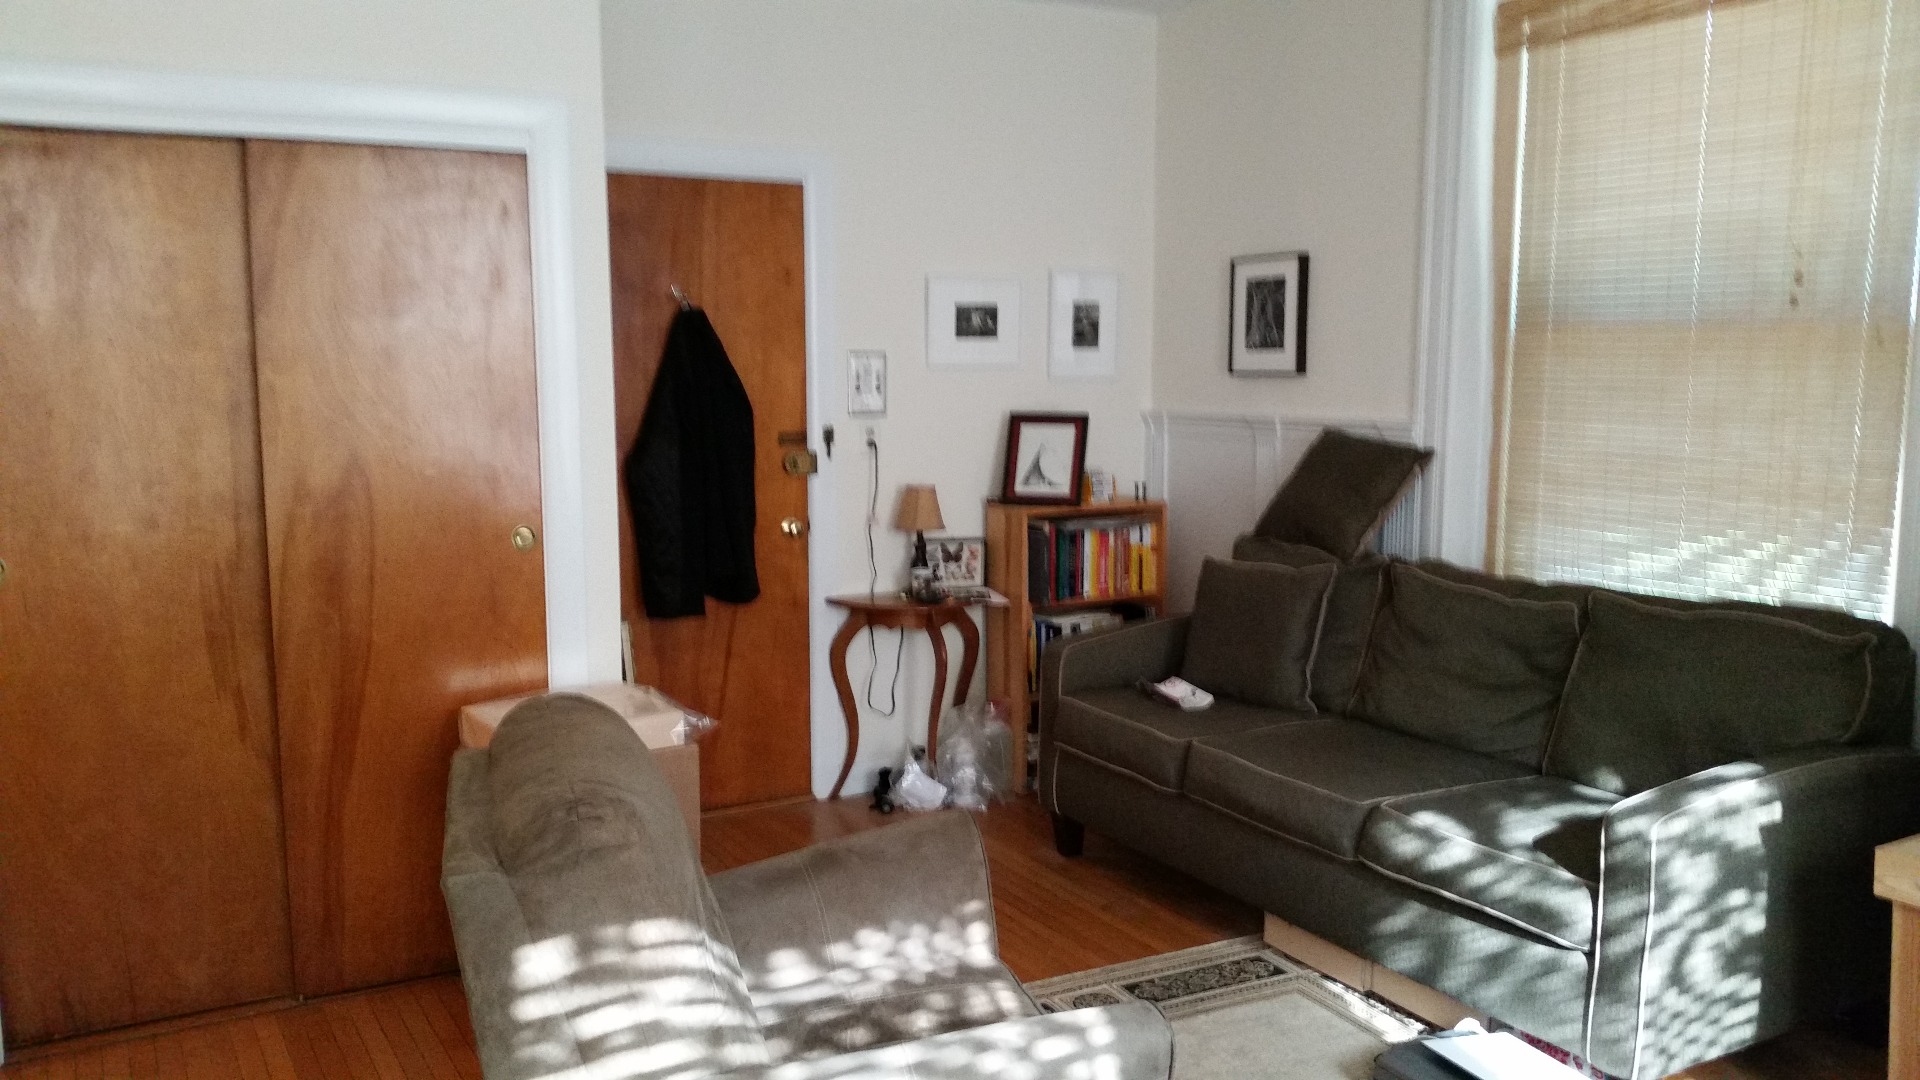 Photos of apartment on Glencoe,Boston MA 02135